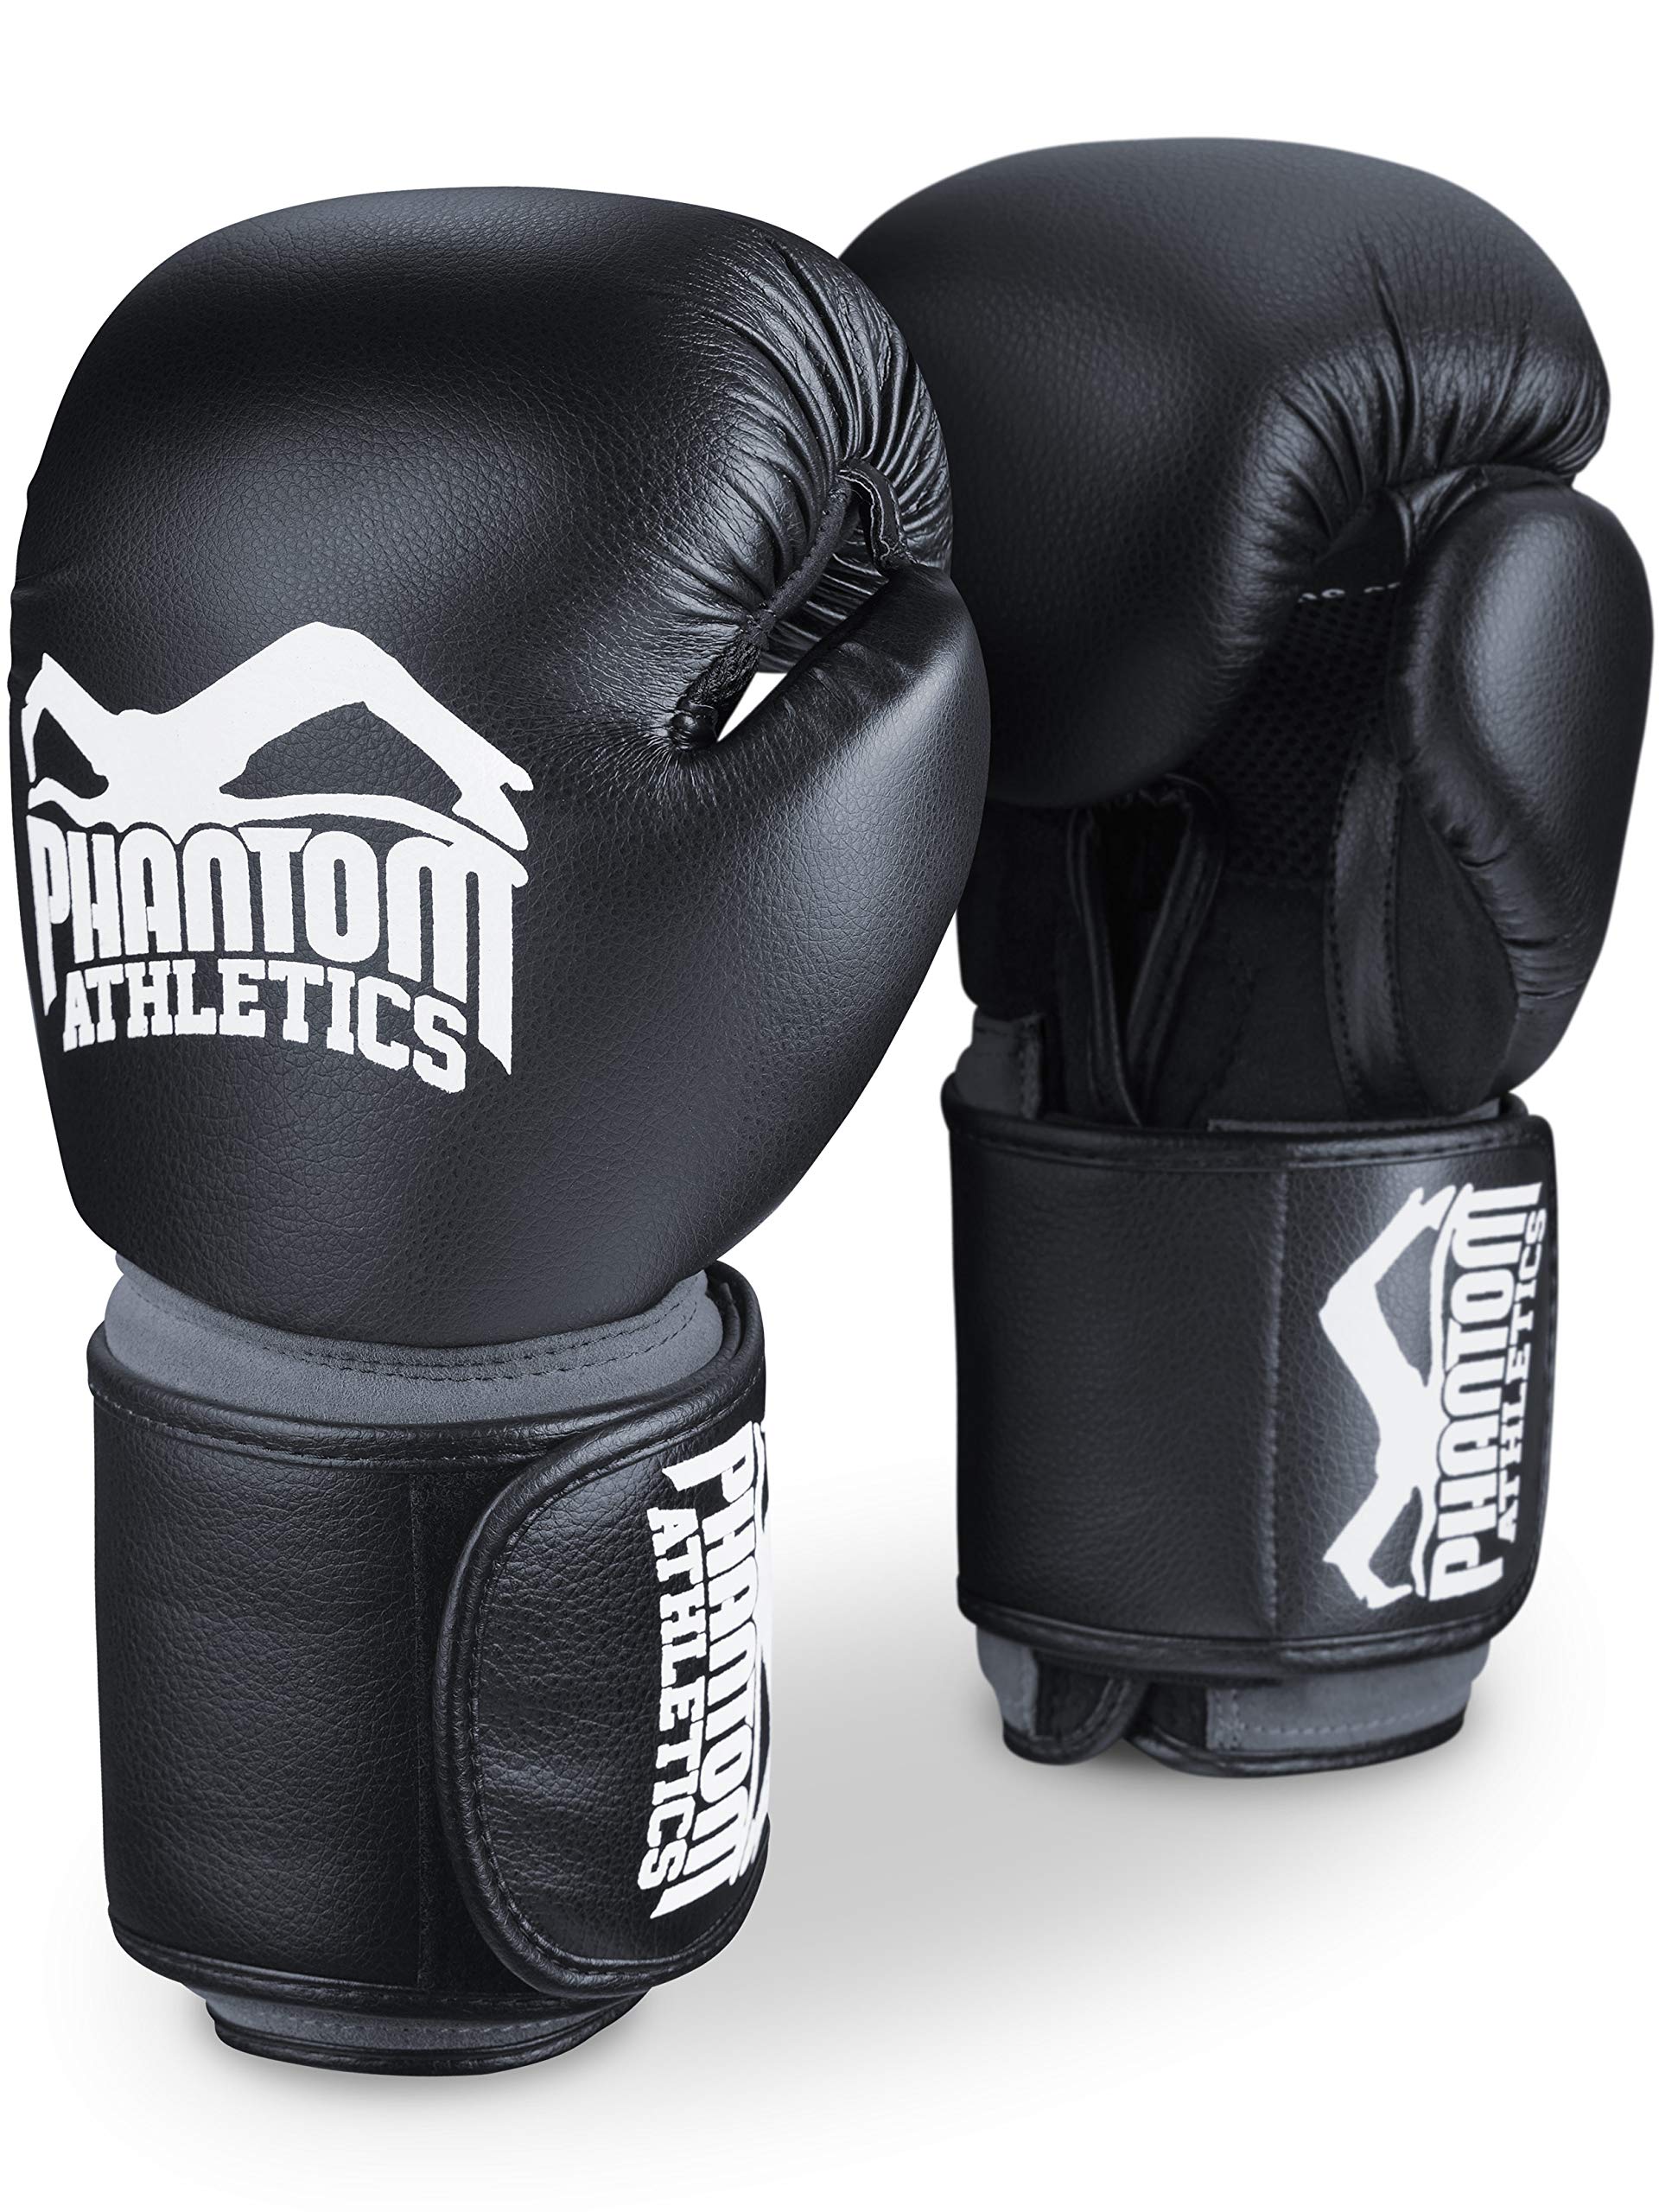 Phantom Boxhandschuhe Elite ATF | 12 oz | Profi Boxing Gloves Männer Training